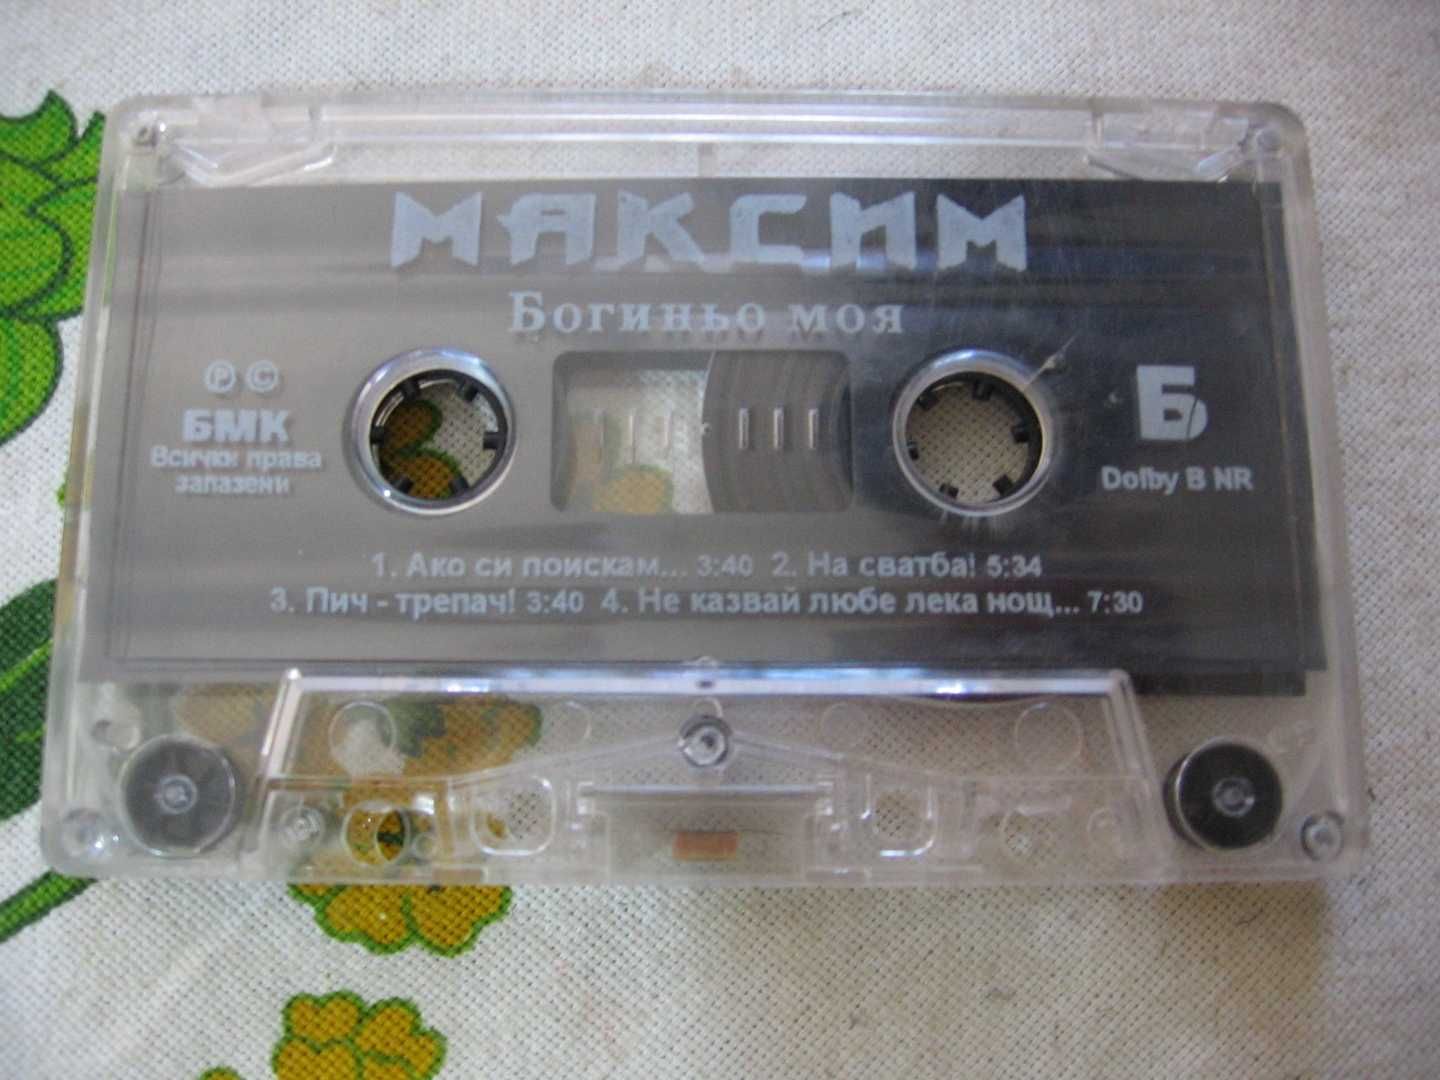 оригинална аудио касета на Максим албумът Богиньо моя